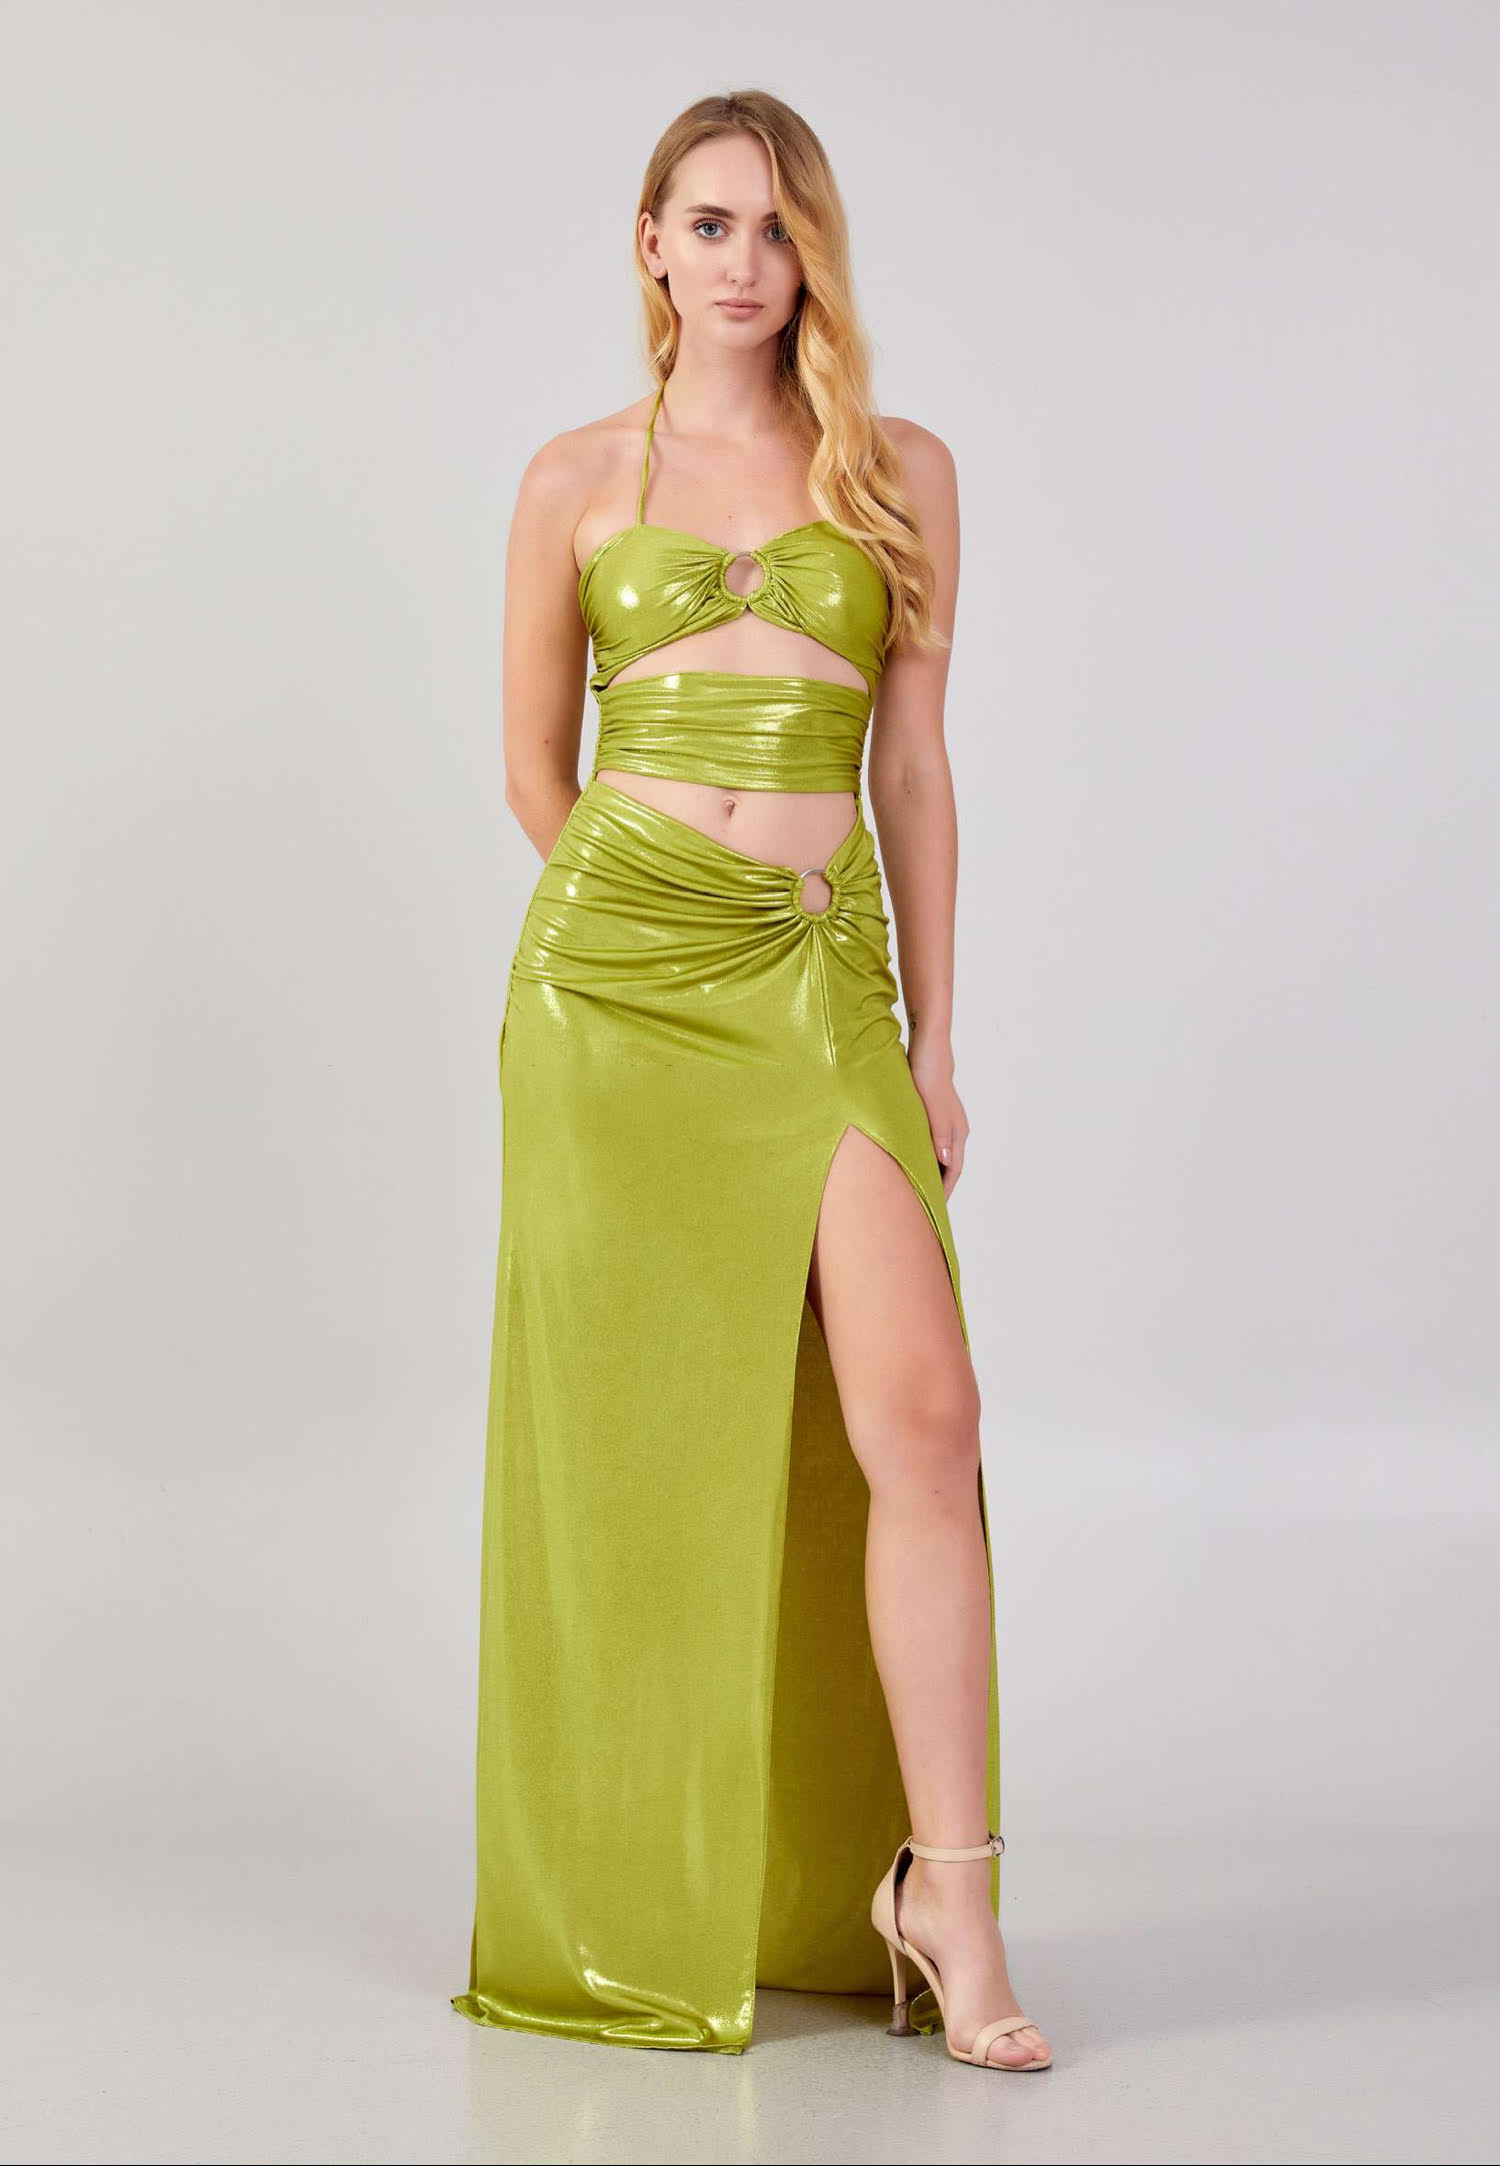 Green Sleeveless Cocktail Dress